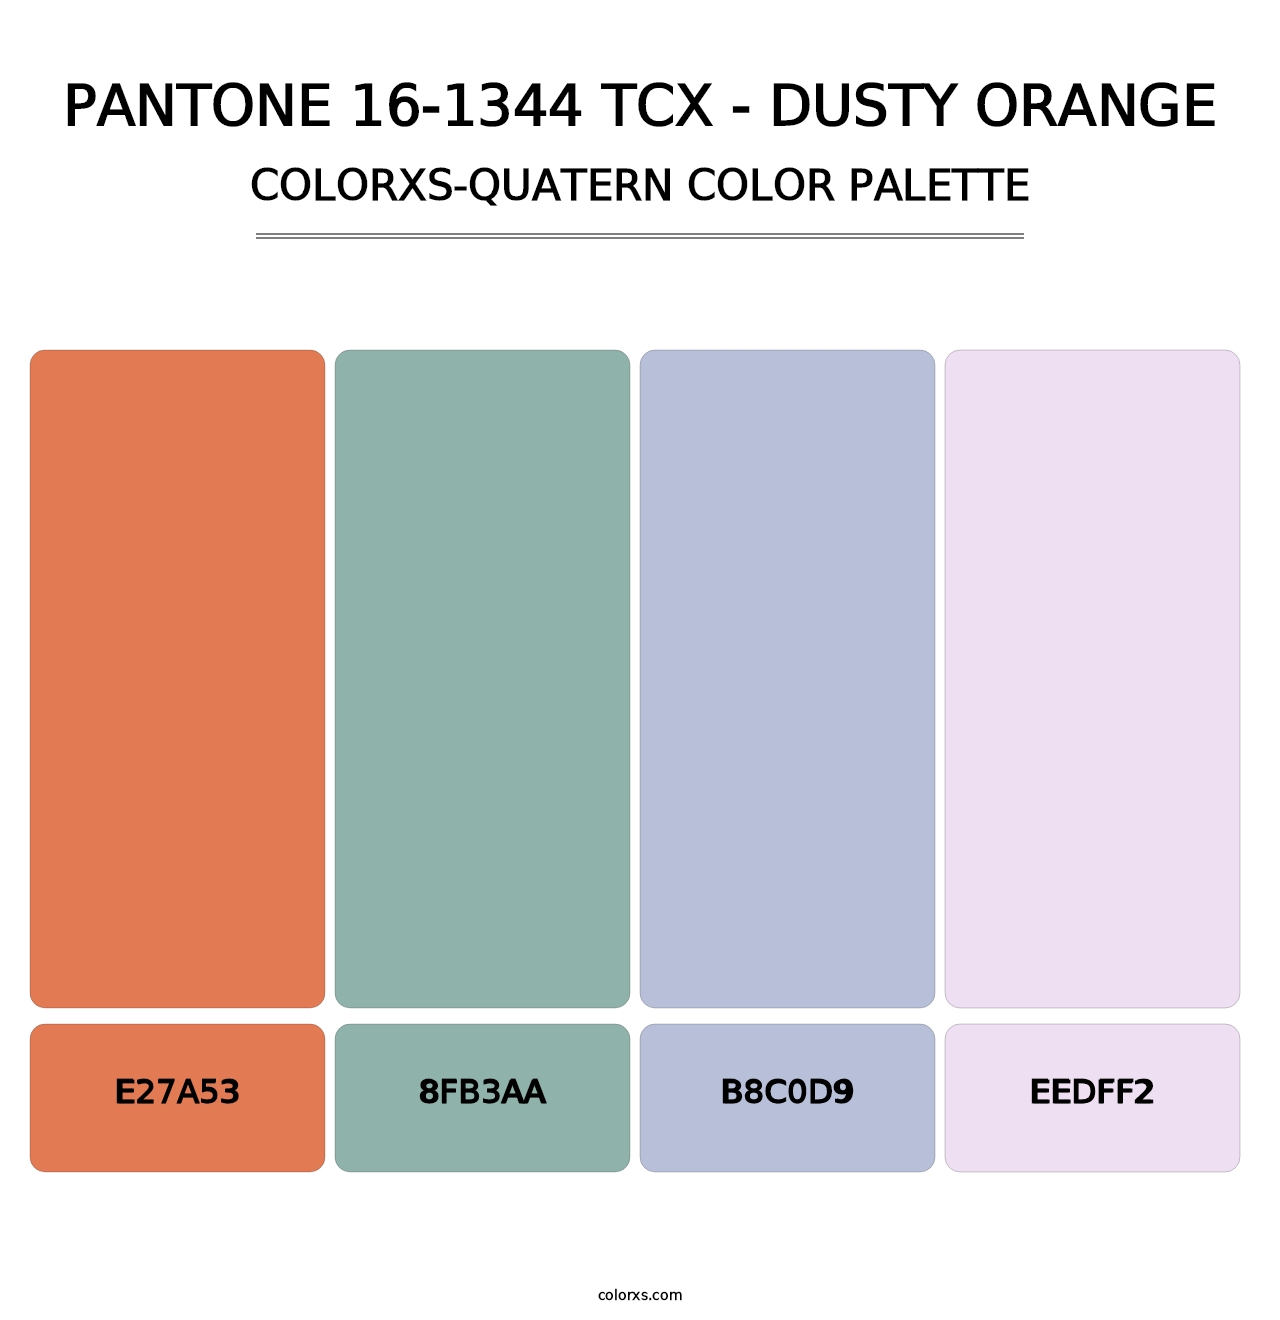 PANTONE 16-1344 TCX - Dusty Orange - Colorxs Quatern Palette